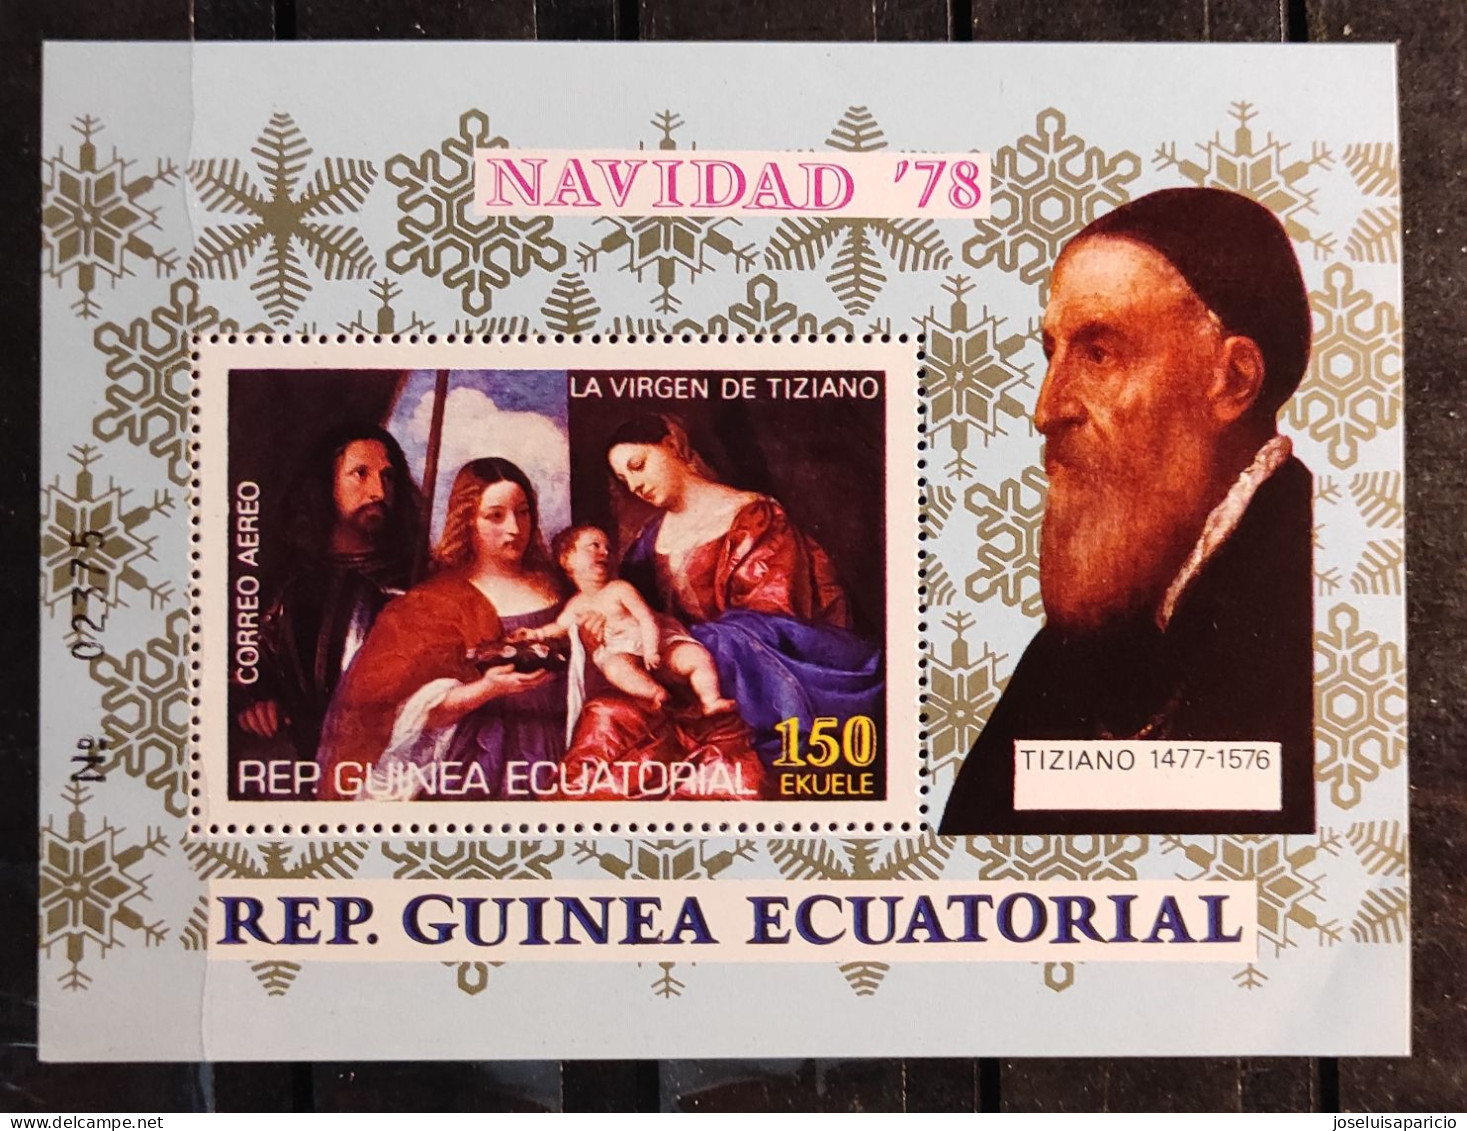 G. ECUATORIAL - NAVIDAD 78 - LA VIRGEN DE TIZIANO 1477/1576 - HOJA BLOQUE - - Äquatorial-Guinea